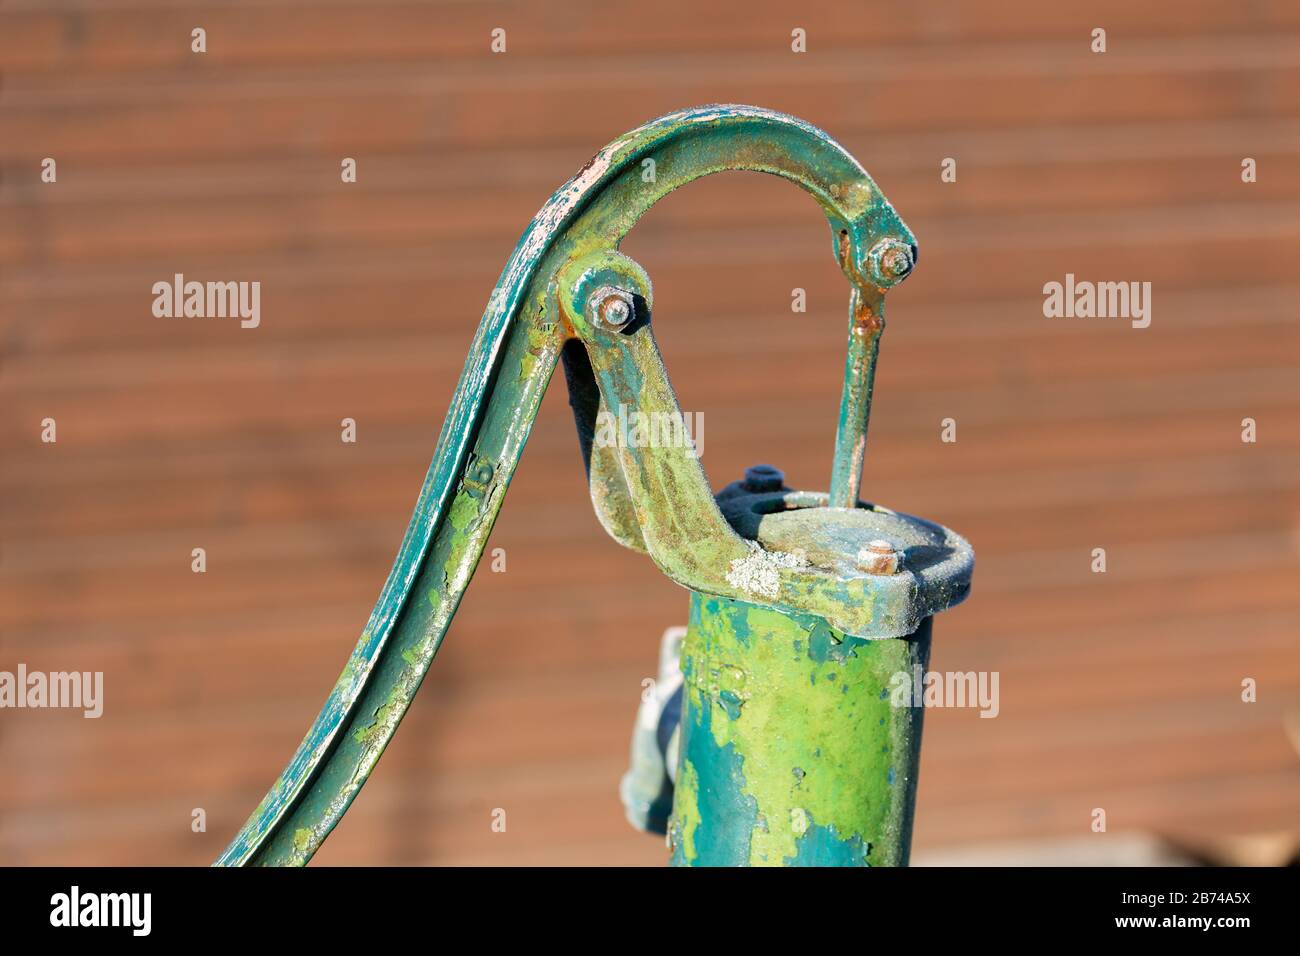 Handwasserpumpe, Wasserpumpe für tiefe Brunnen, manuelle Saugpumpe mit  automatischer Saugpumpe aus Edelstahl für Haus, Garten, Hof : :  Garten